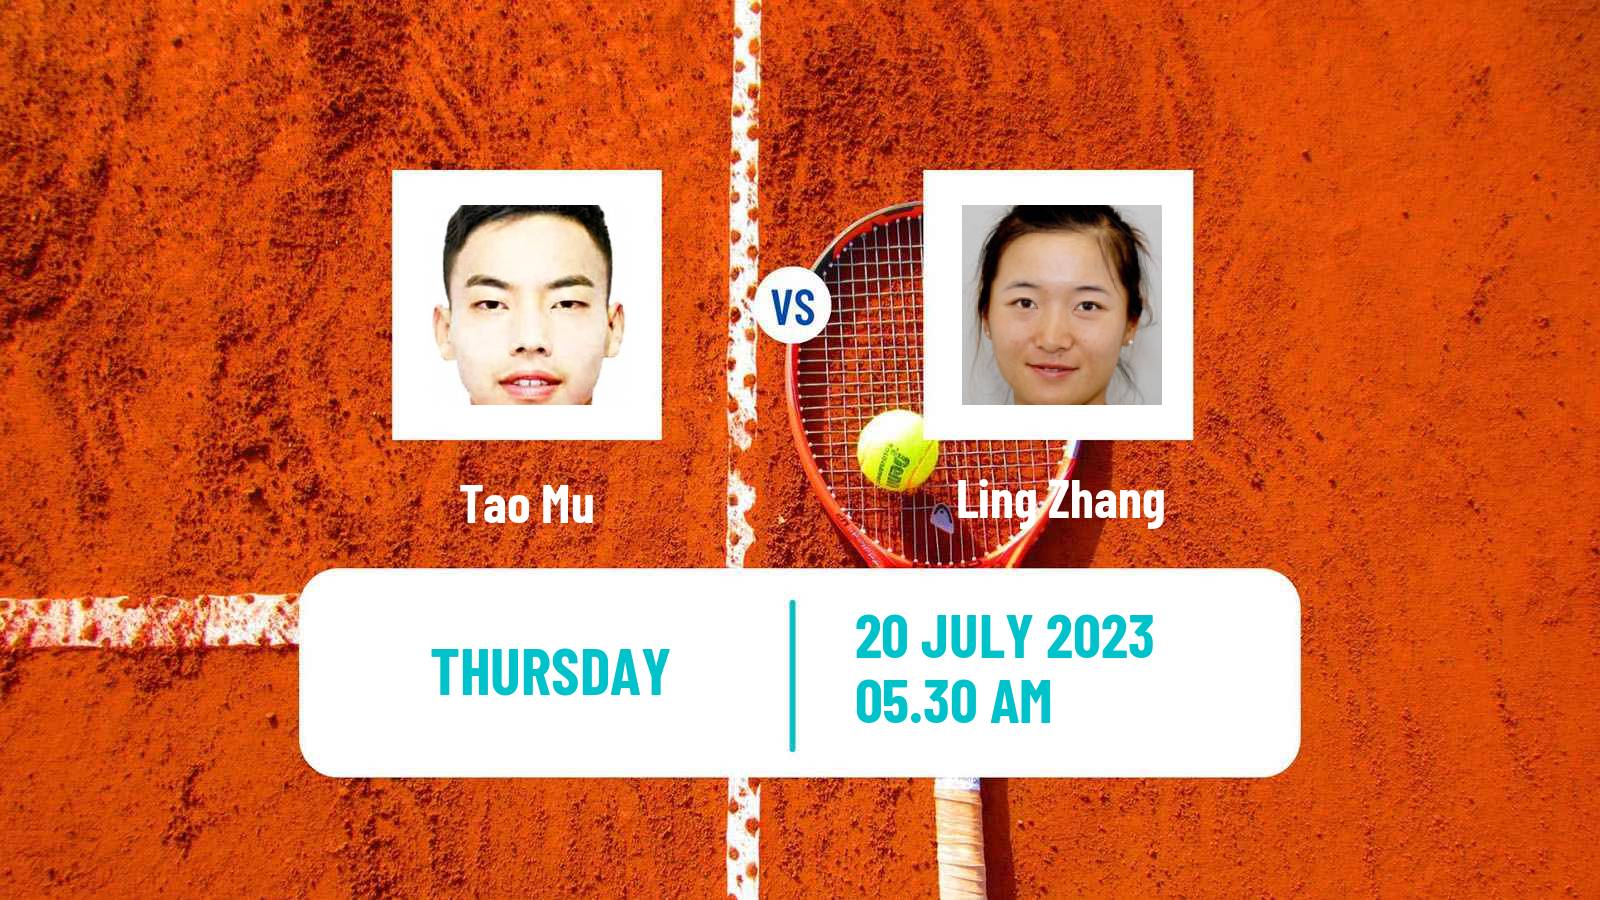 Tennis ITF M25 Fuzhou Men Tao Mu - Ling Zhang